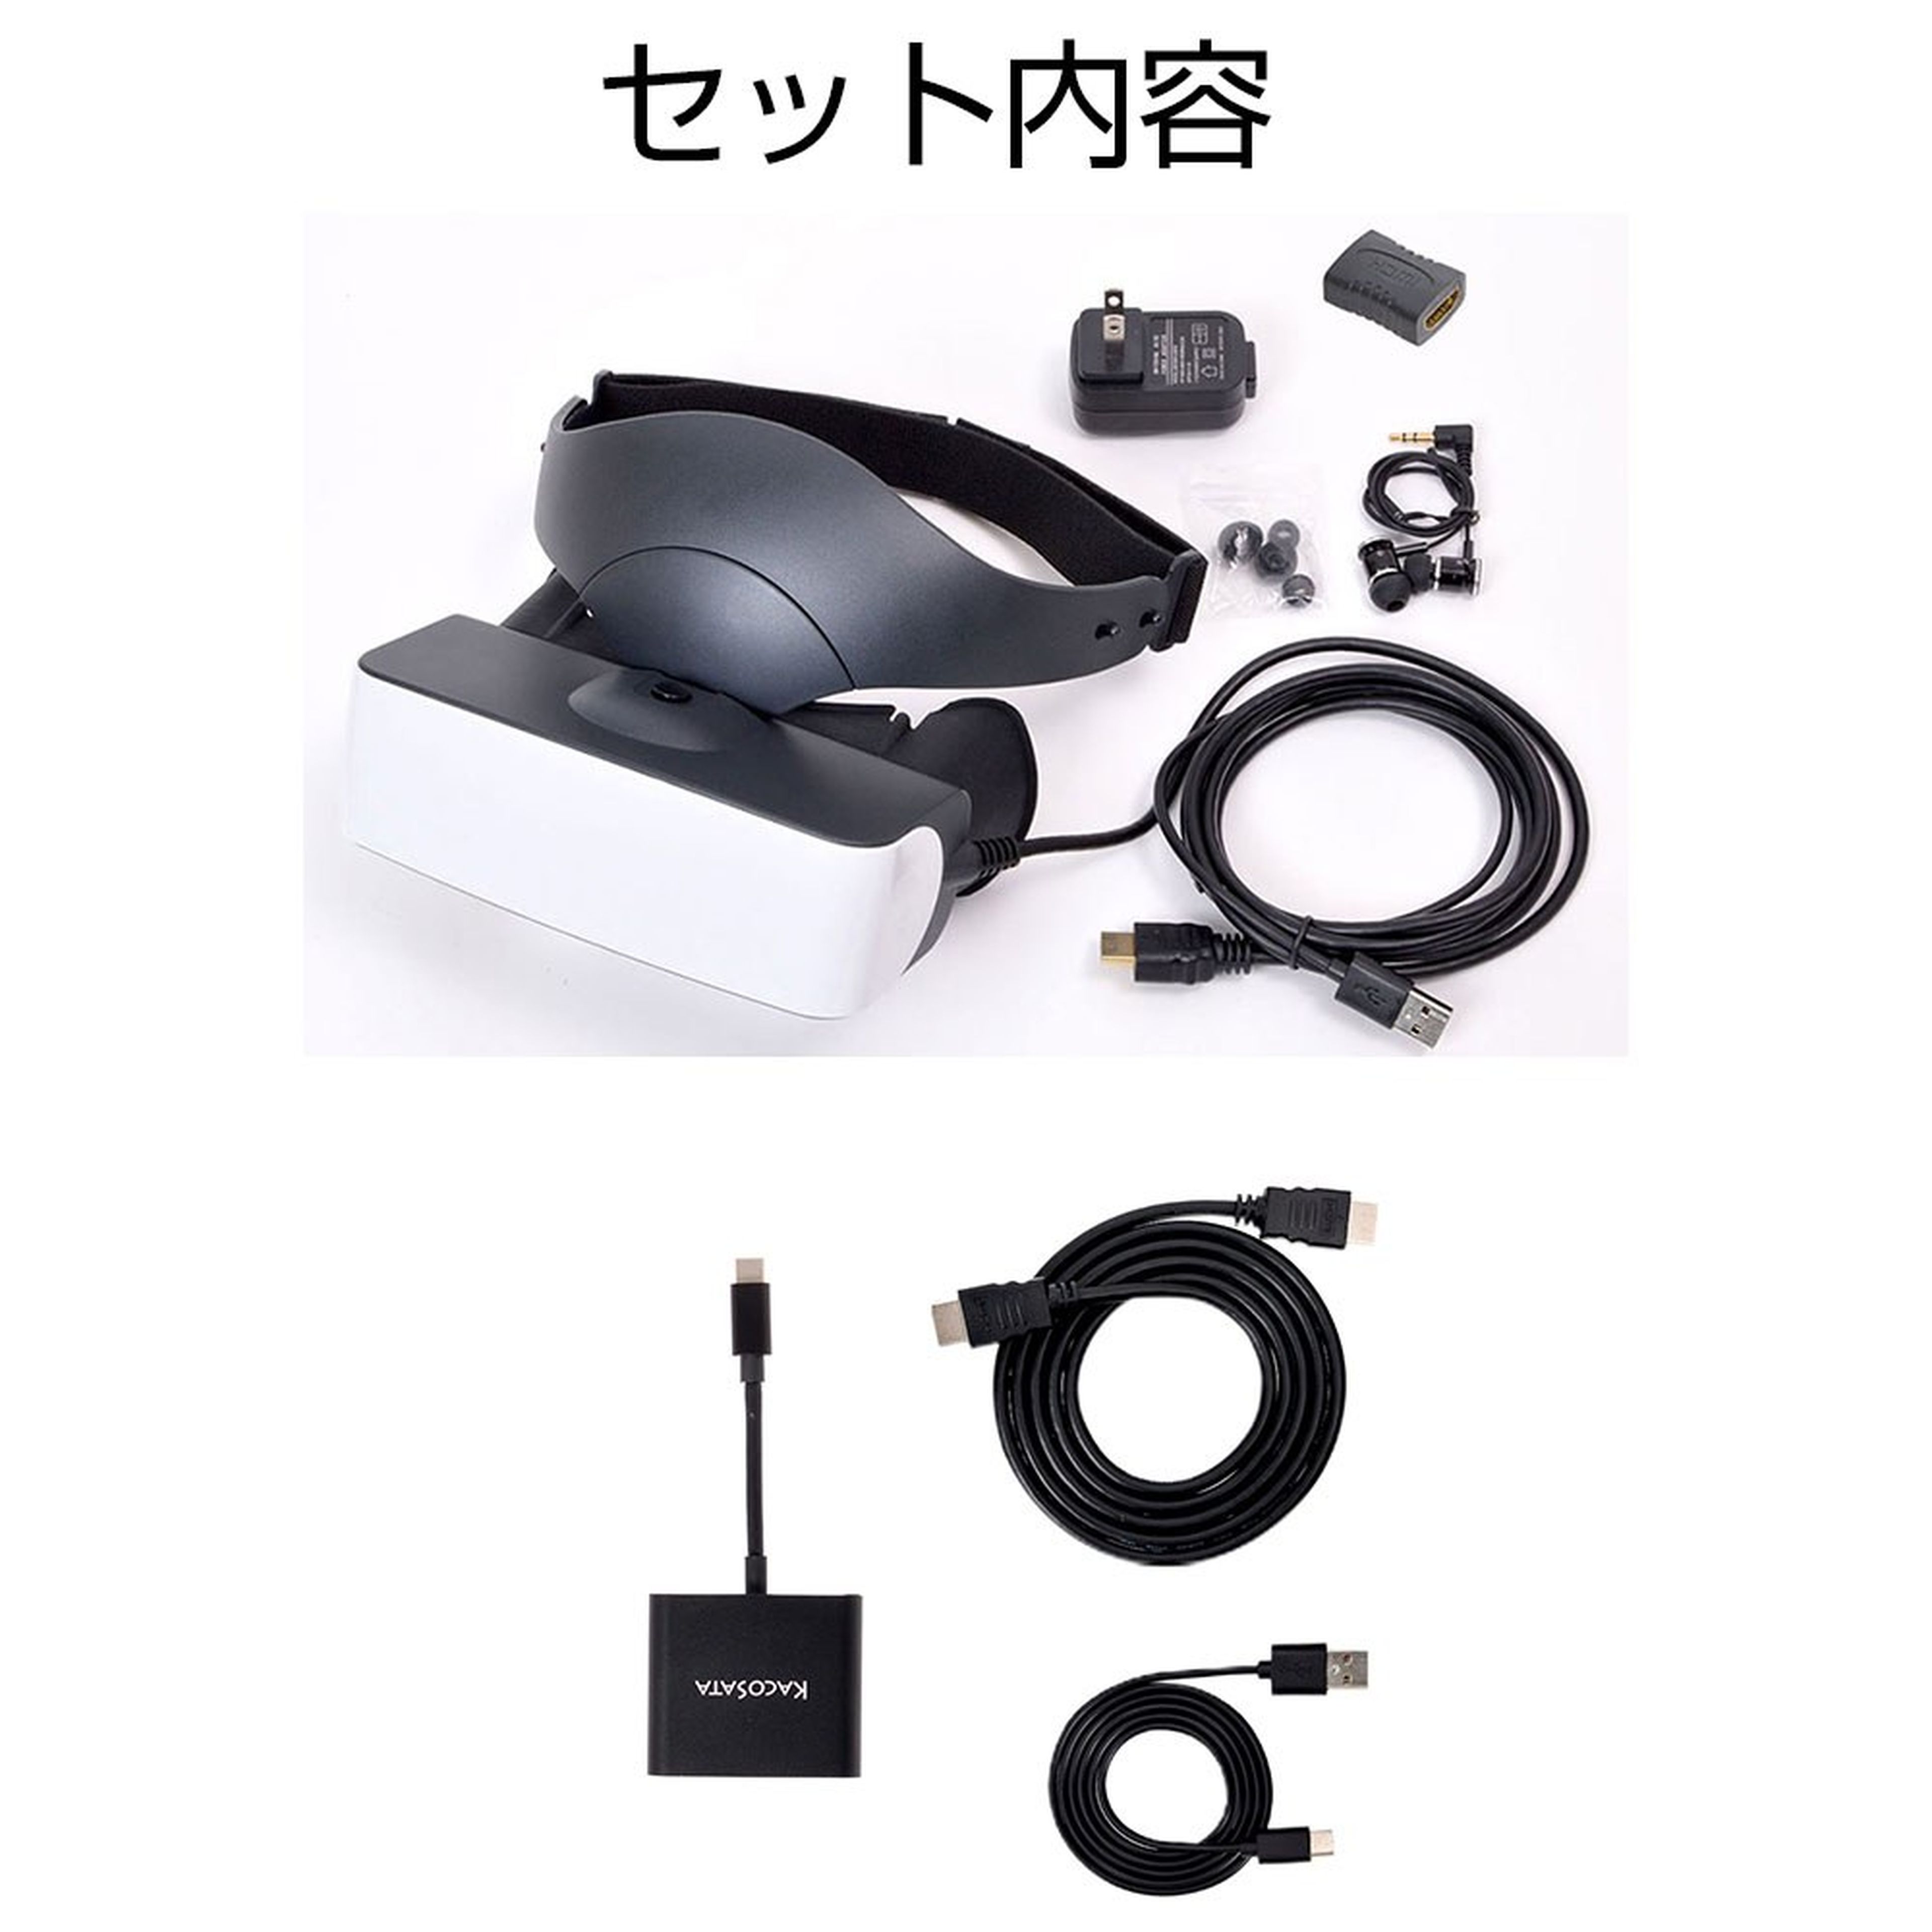 Gafas con pantalla de 120 pulgadas compatibles con Nintendo Switch